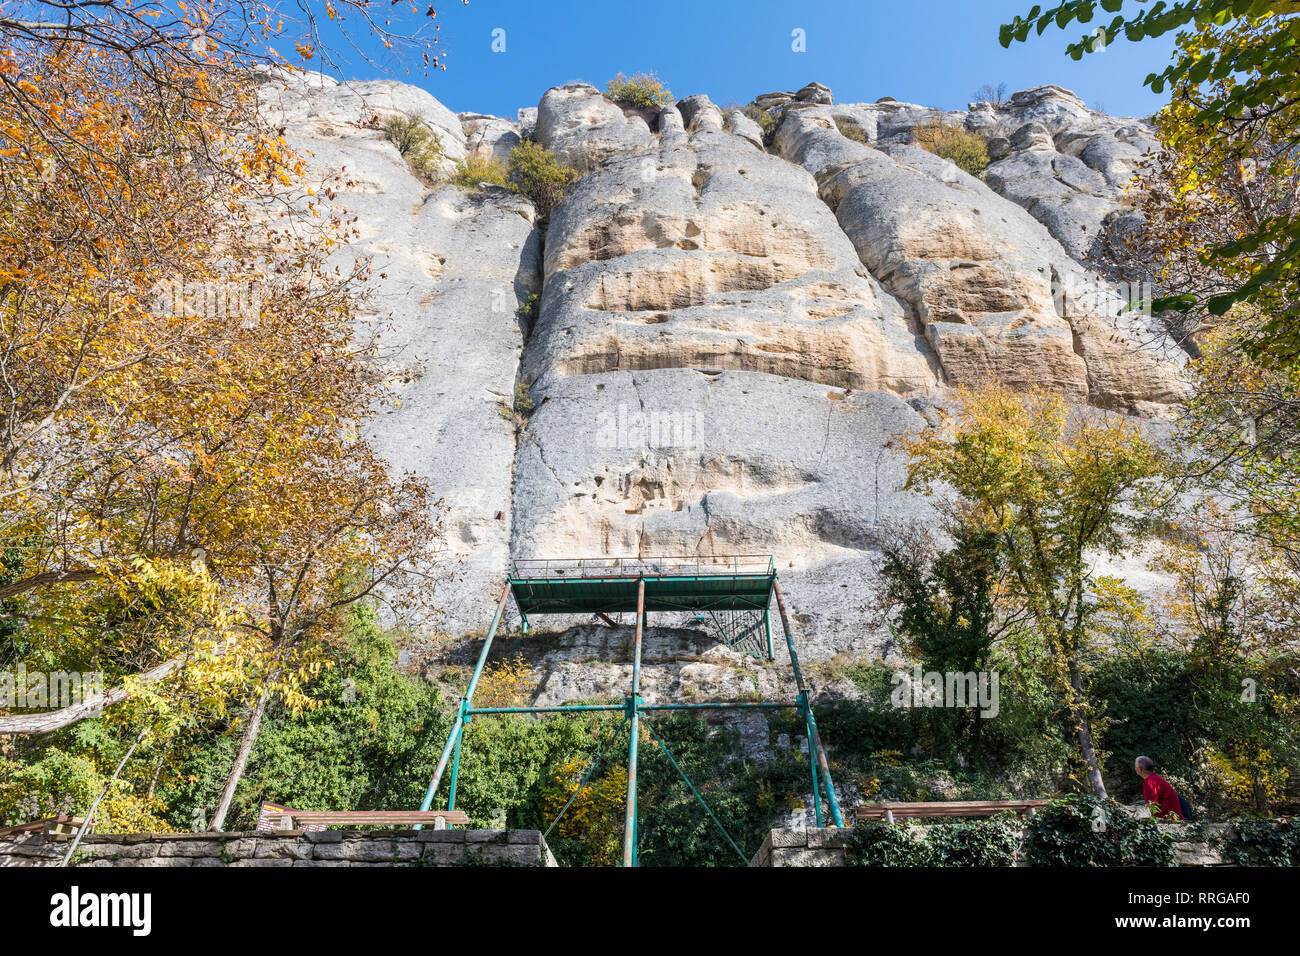 Cavalier de Madara (du Chevalier de Madara) rock soulagement, UNESCO World Heritage Site, Shumen, Bulgarie, Europe Banque D'Images